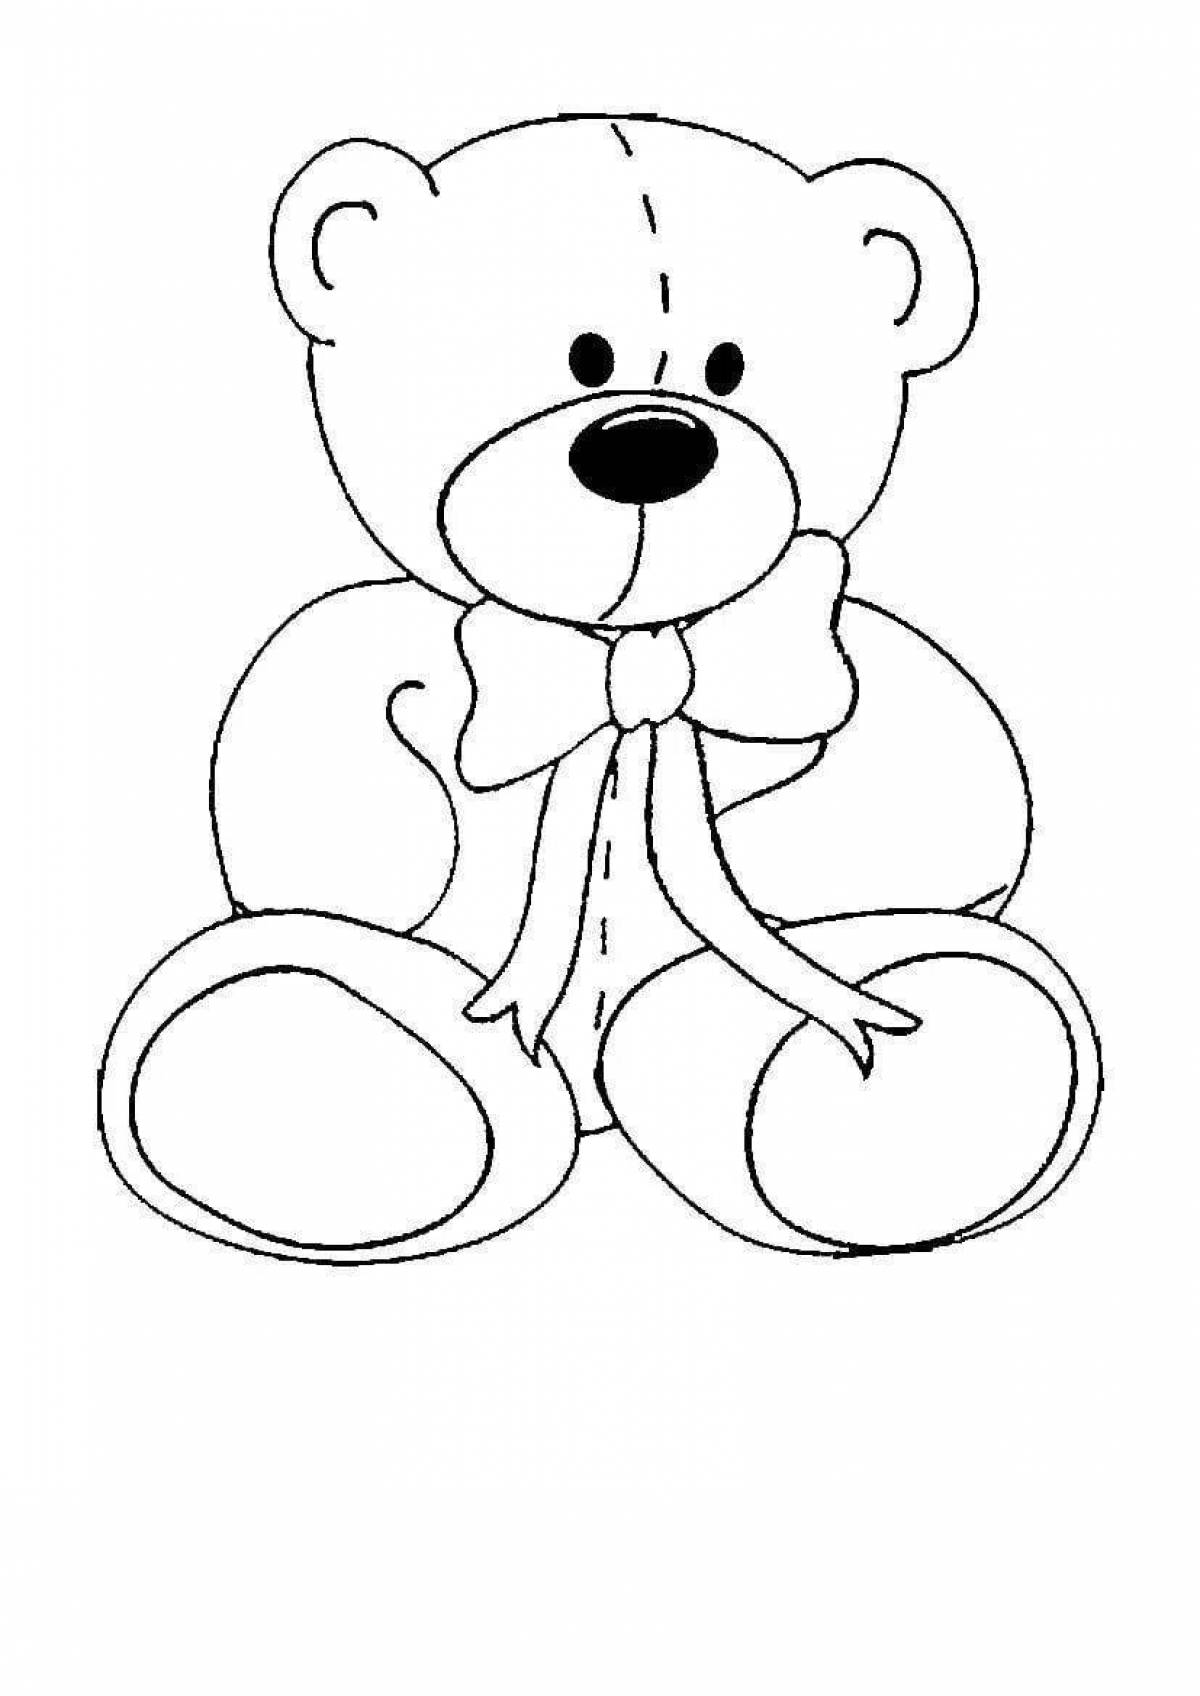 Рисунок раскраска Мишка для малышей.Как нарисовать и раскрасить Мишку.